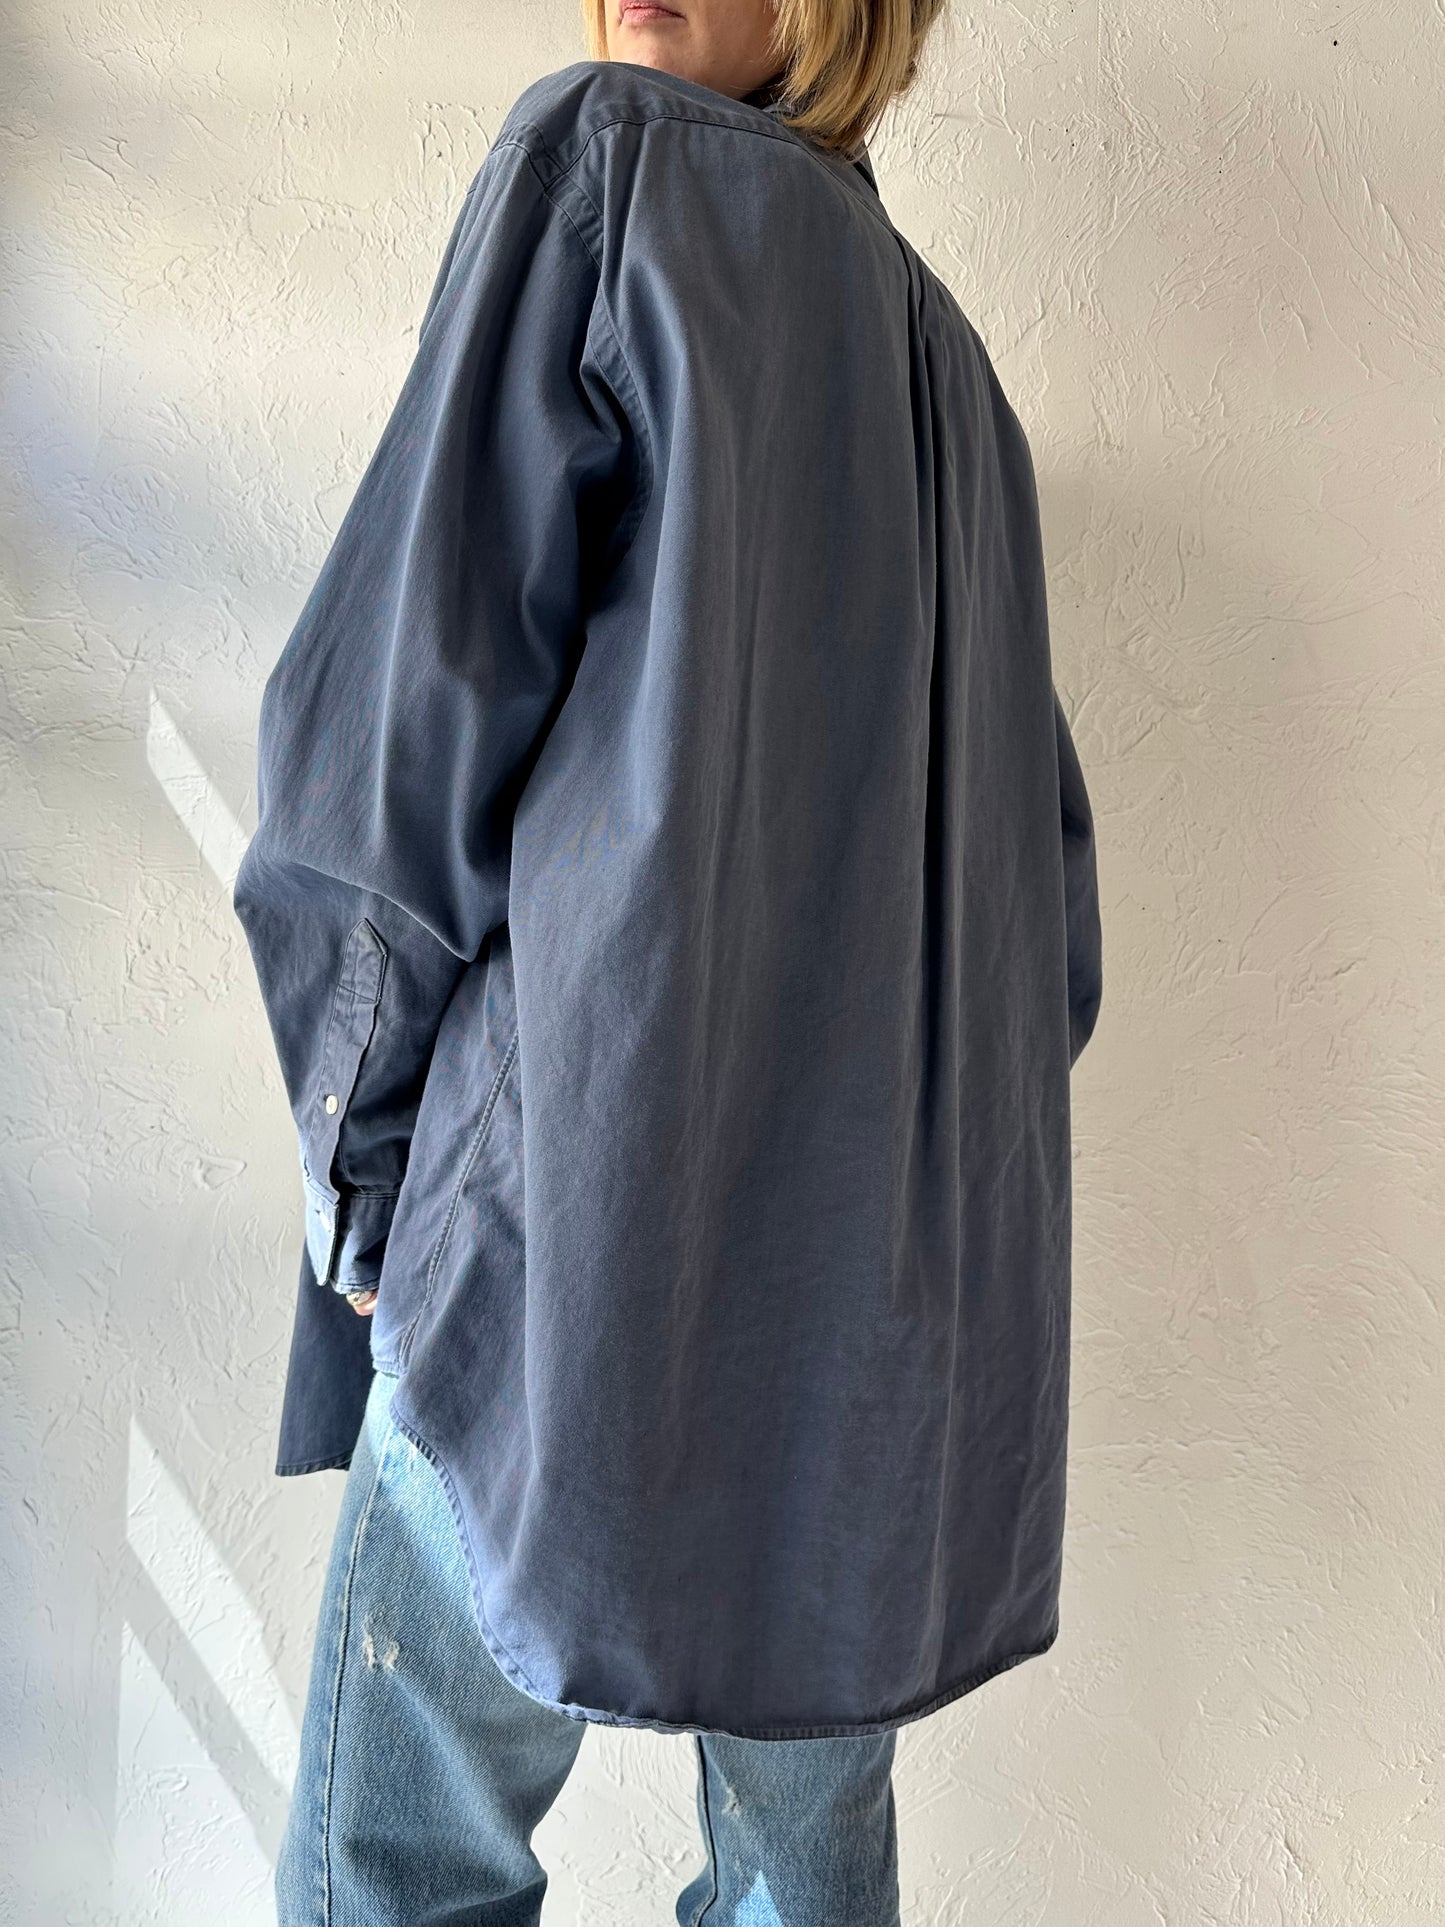 Vintage 'Ralph Lauren' Navy Blue Button Up Shirt / XL